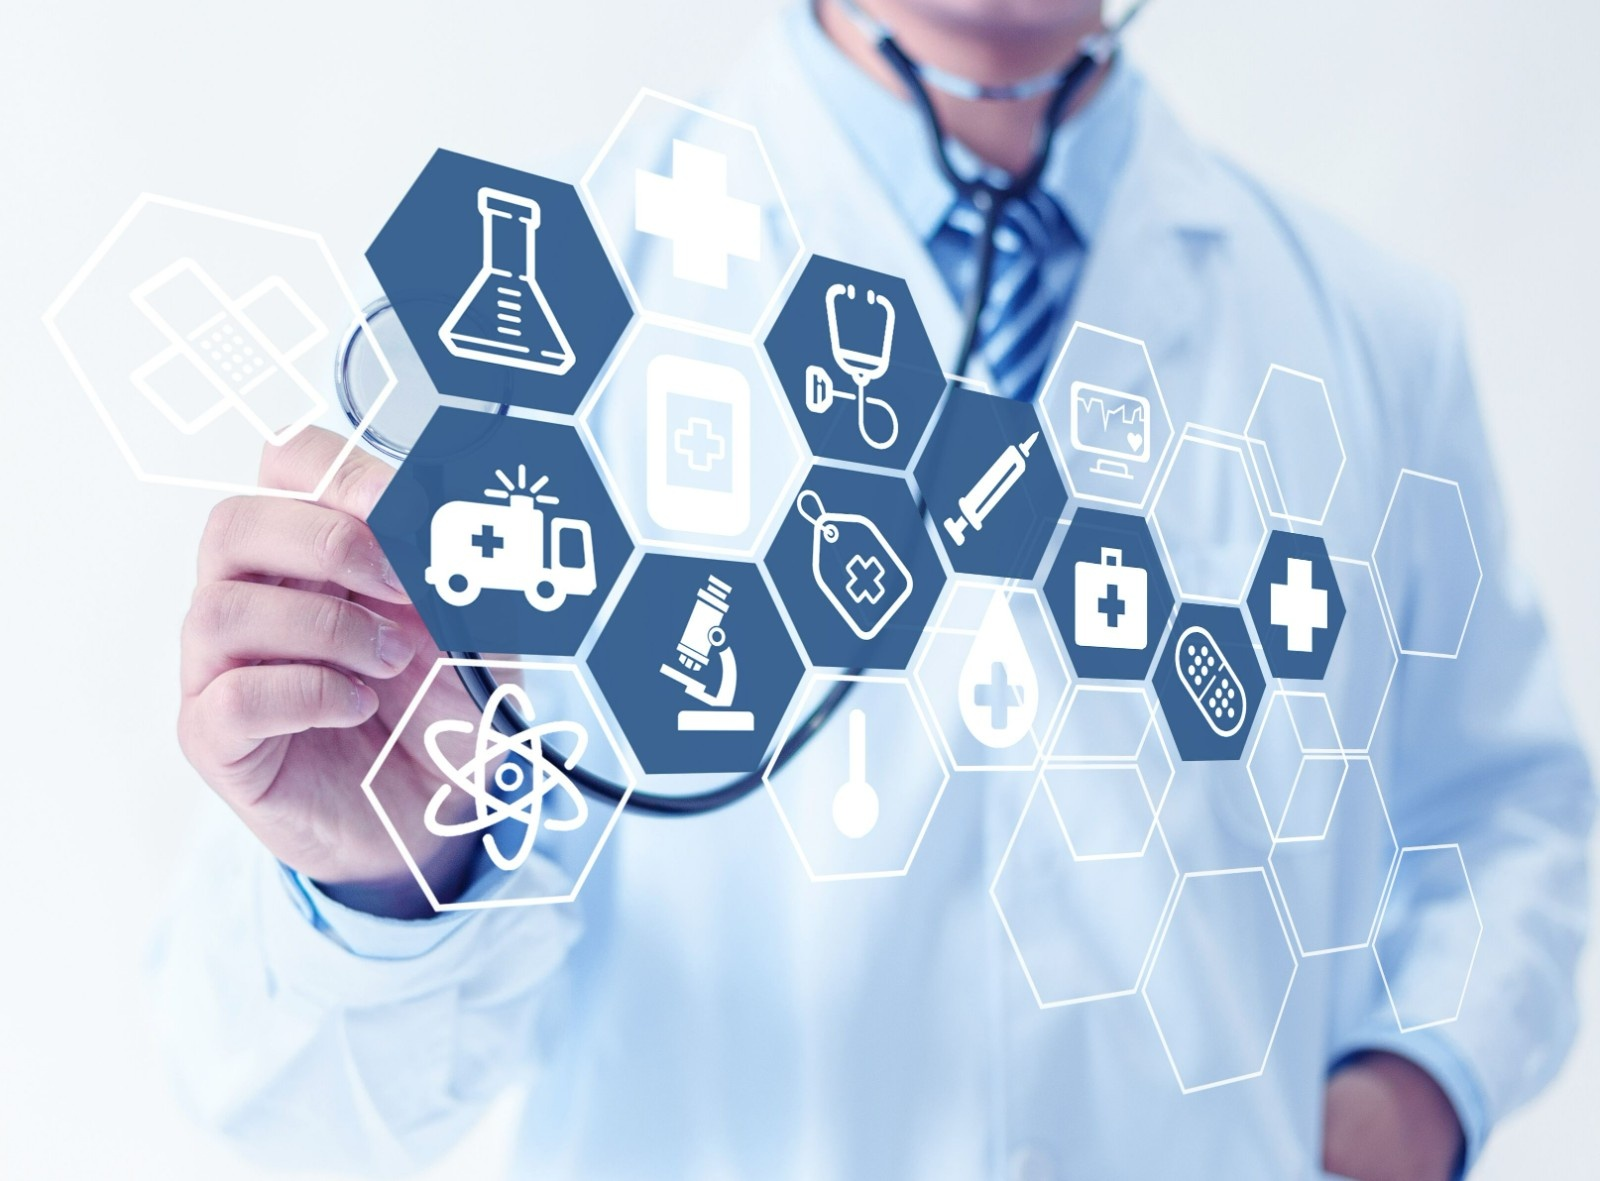 互联网诊疗规范发展 人工智能软件不能代替医师接诊